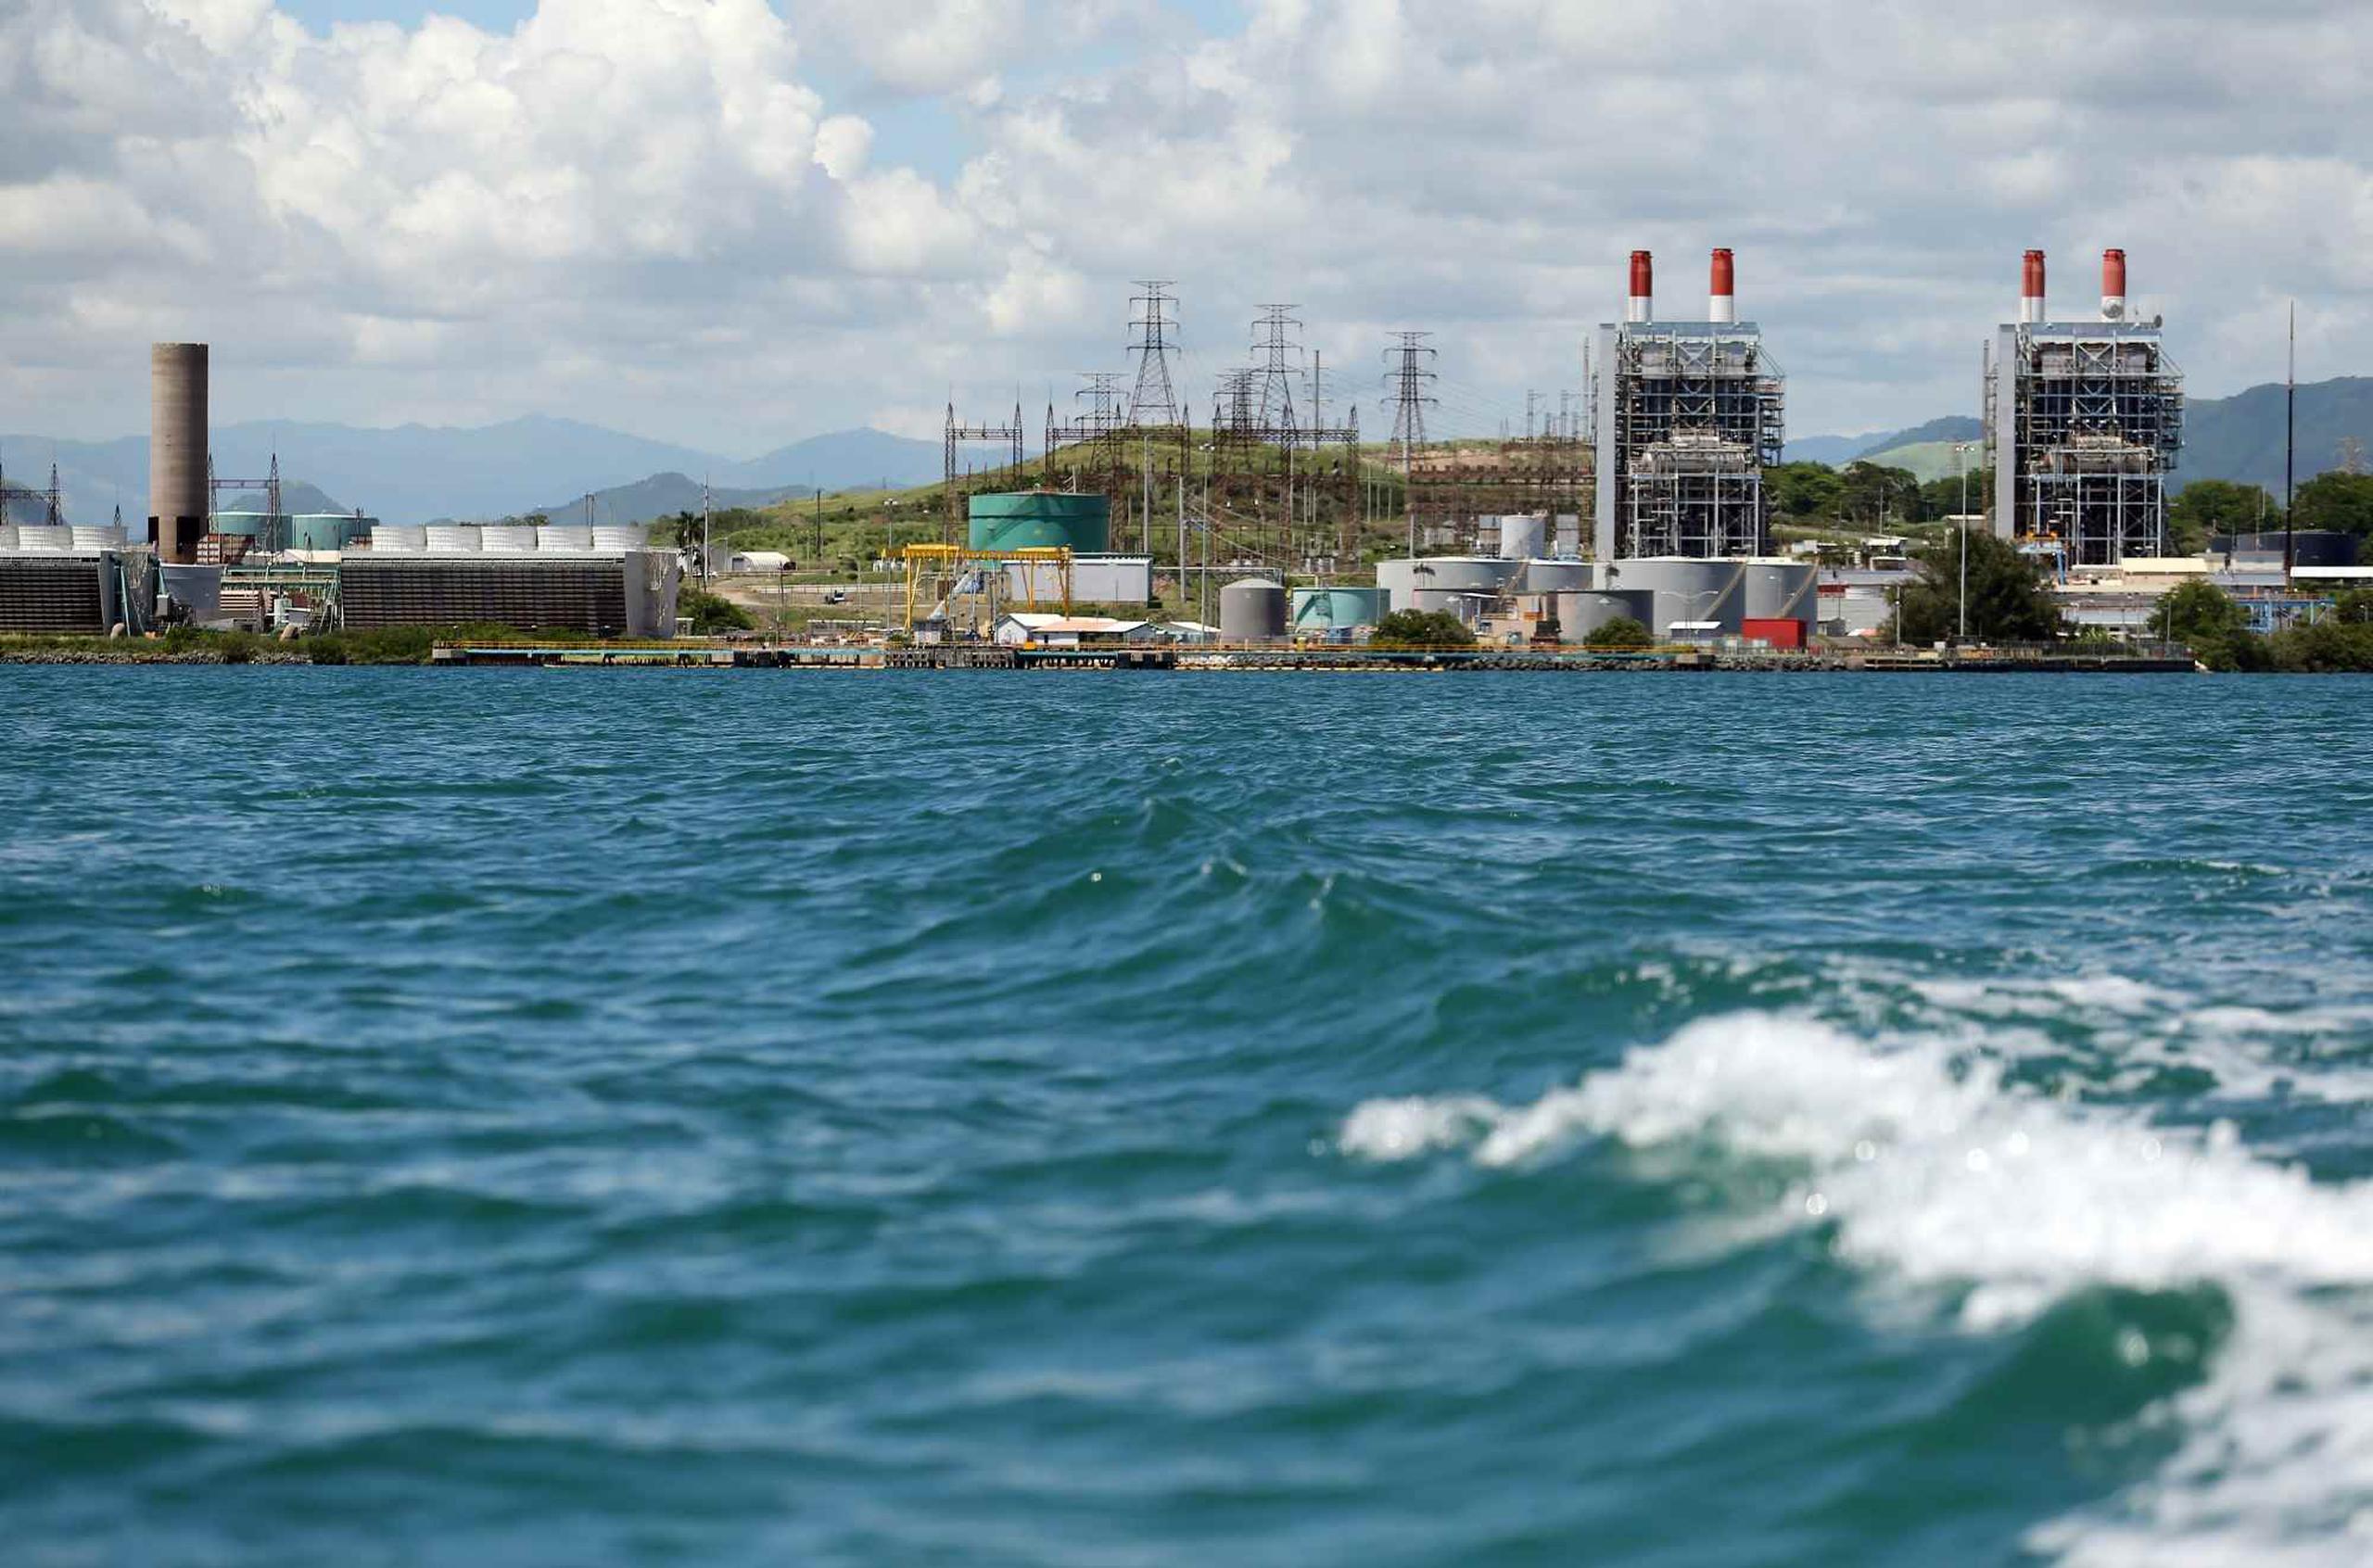 El director de la Autoridad de Energía Eléctica aseguró que el proyecto Aguirre Offshore GasPort es crítico para la agencia. (GFR Media)